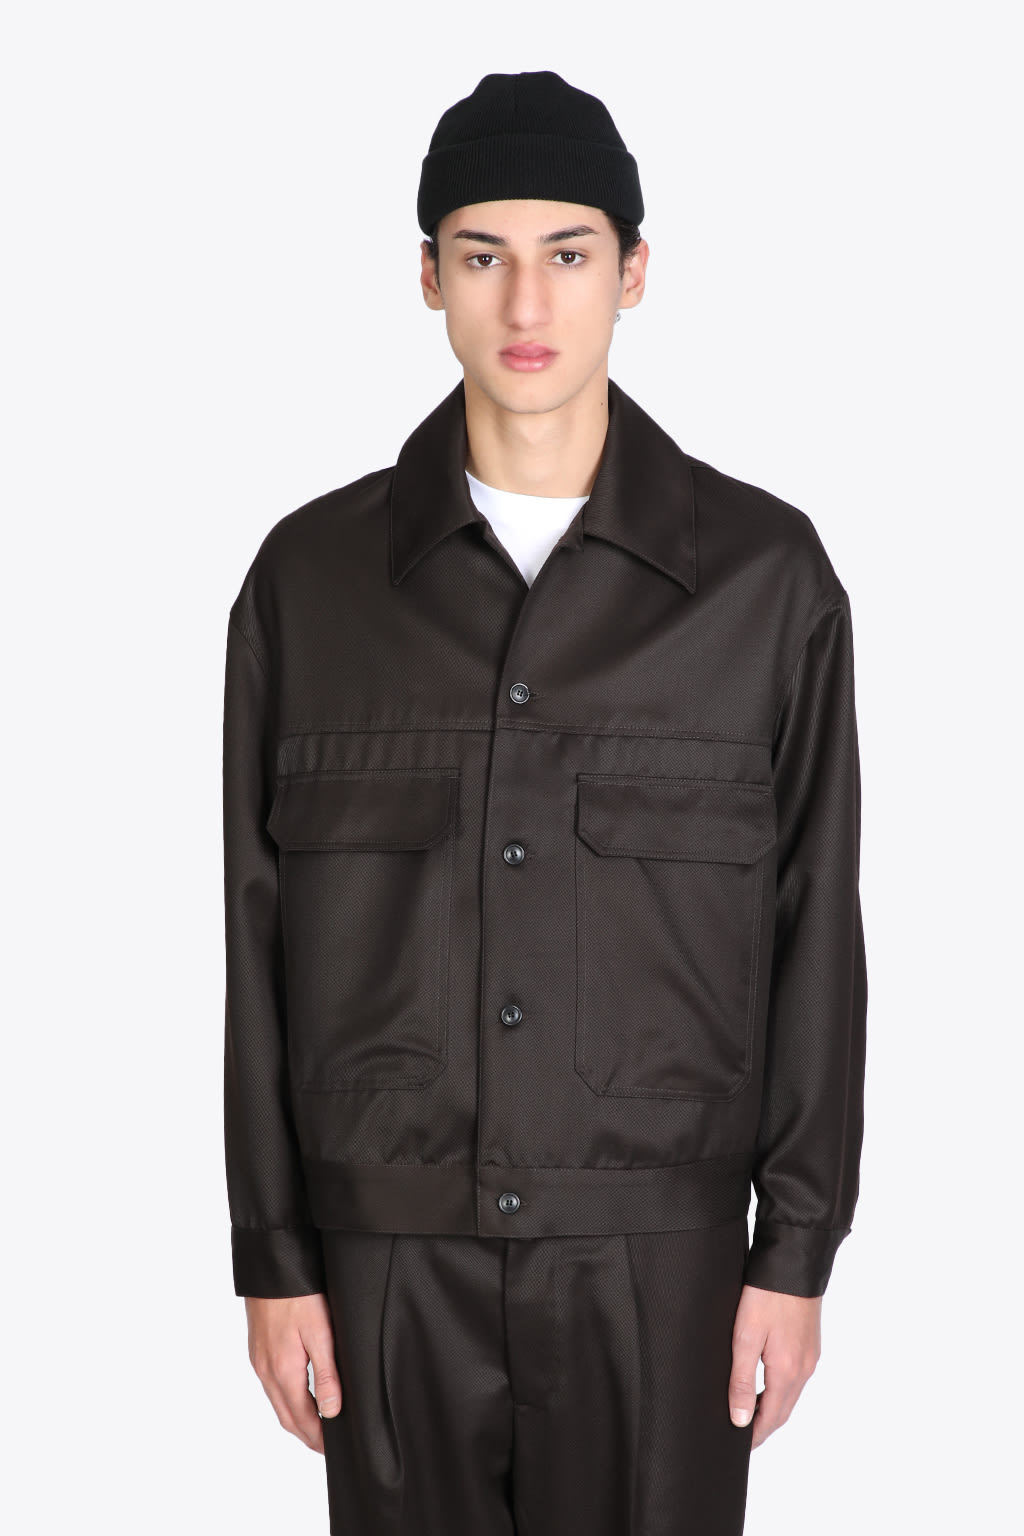 lownn Jacket Dark brown wool jacket.